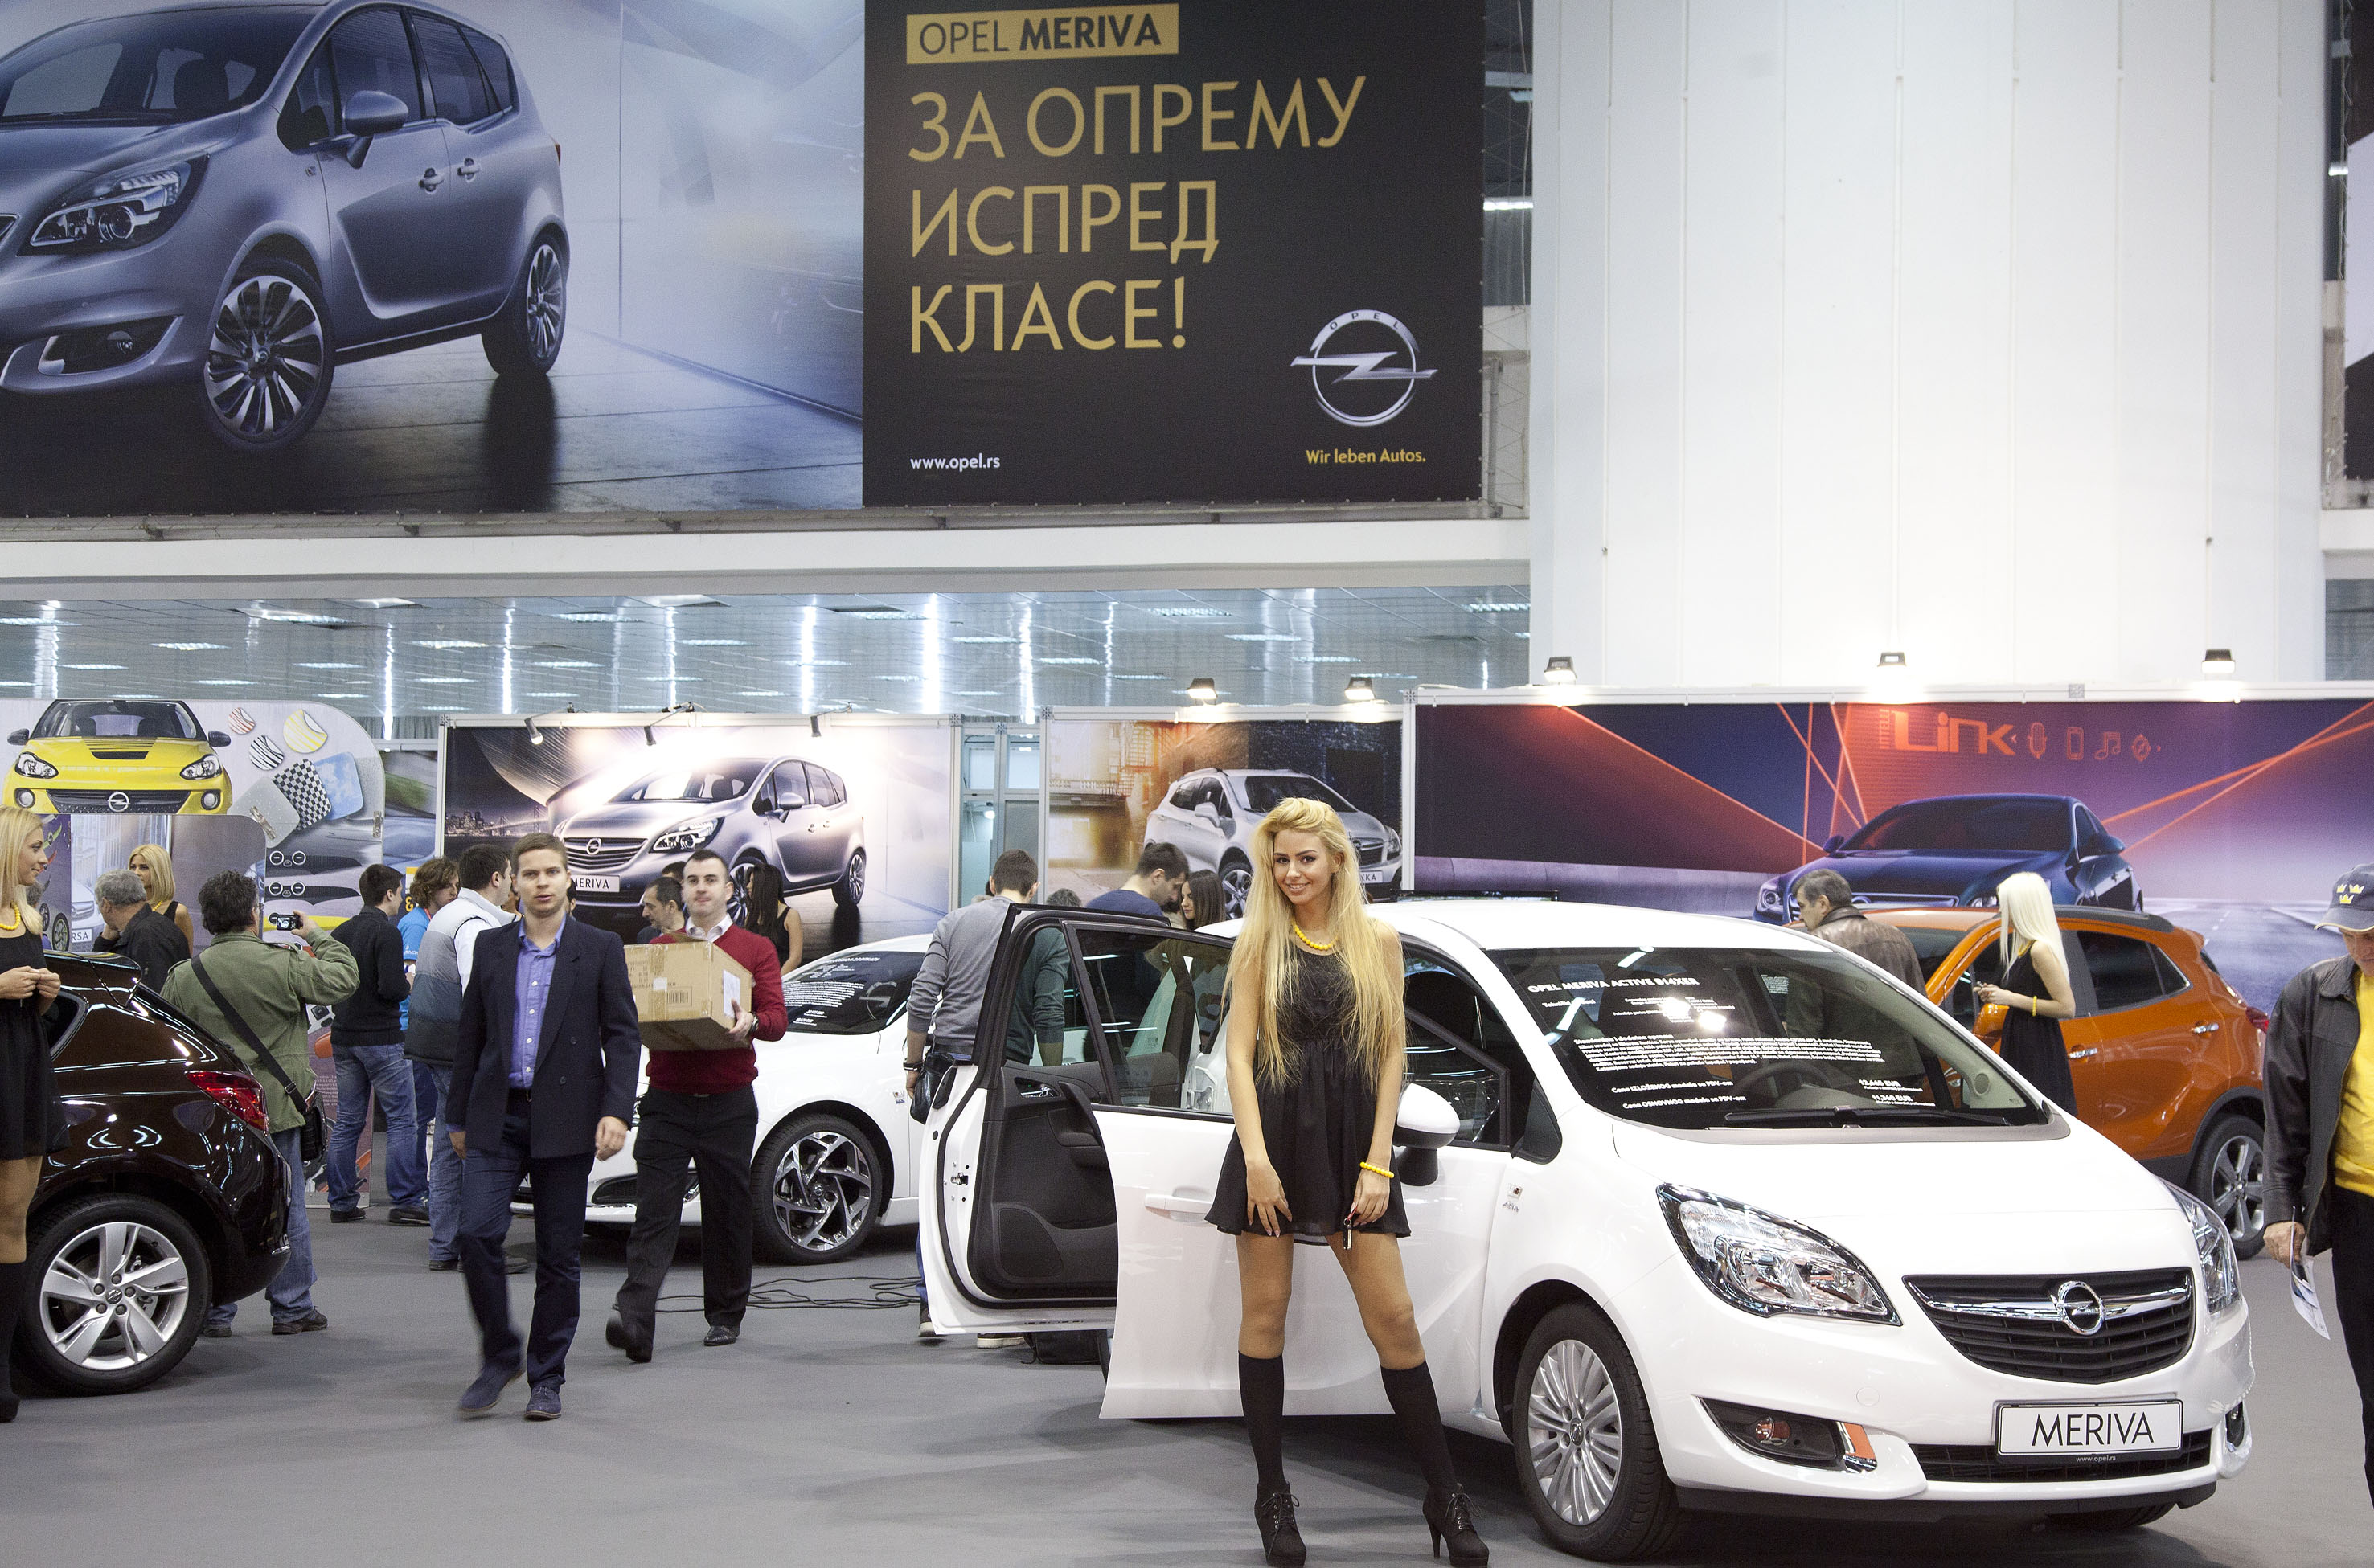 Opel Meriva: Velika premijera šampiona ergonomičnosti i fleksibilnosti na sajmu u Beogradu